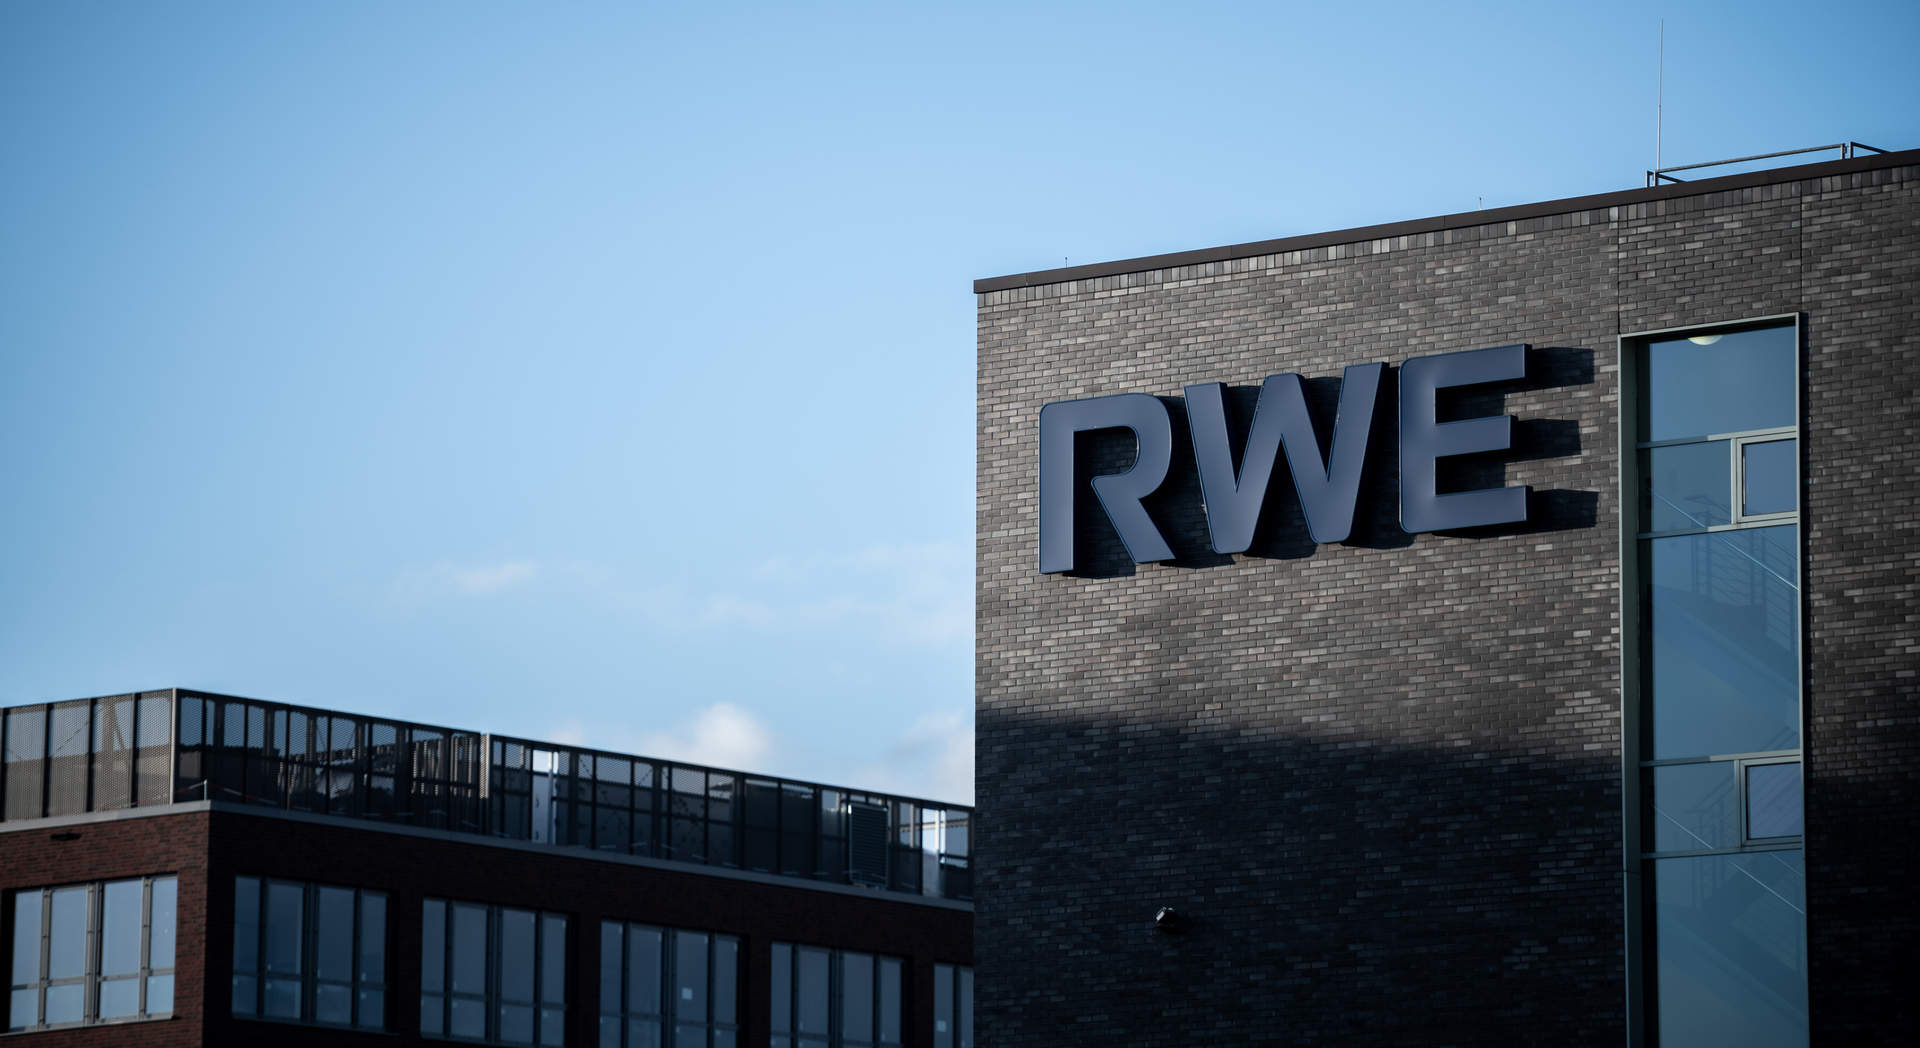 La energética alemana RWE gana 1.900 millones de euros, un 18,9% más, en el primer trimestre del año